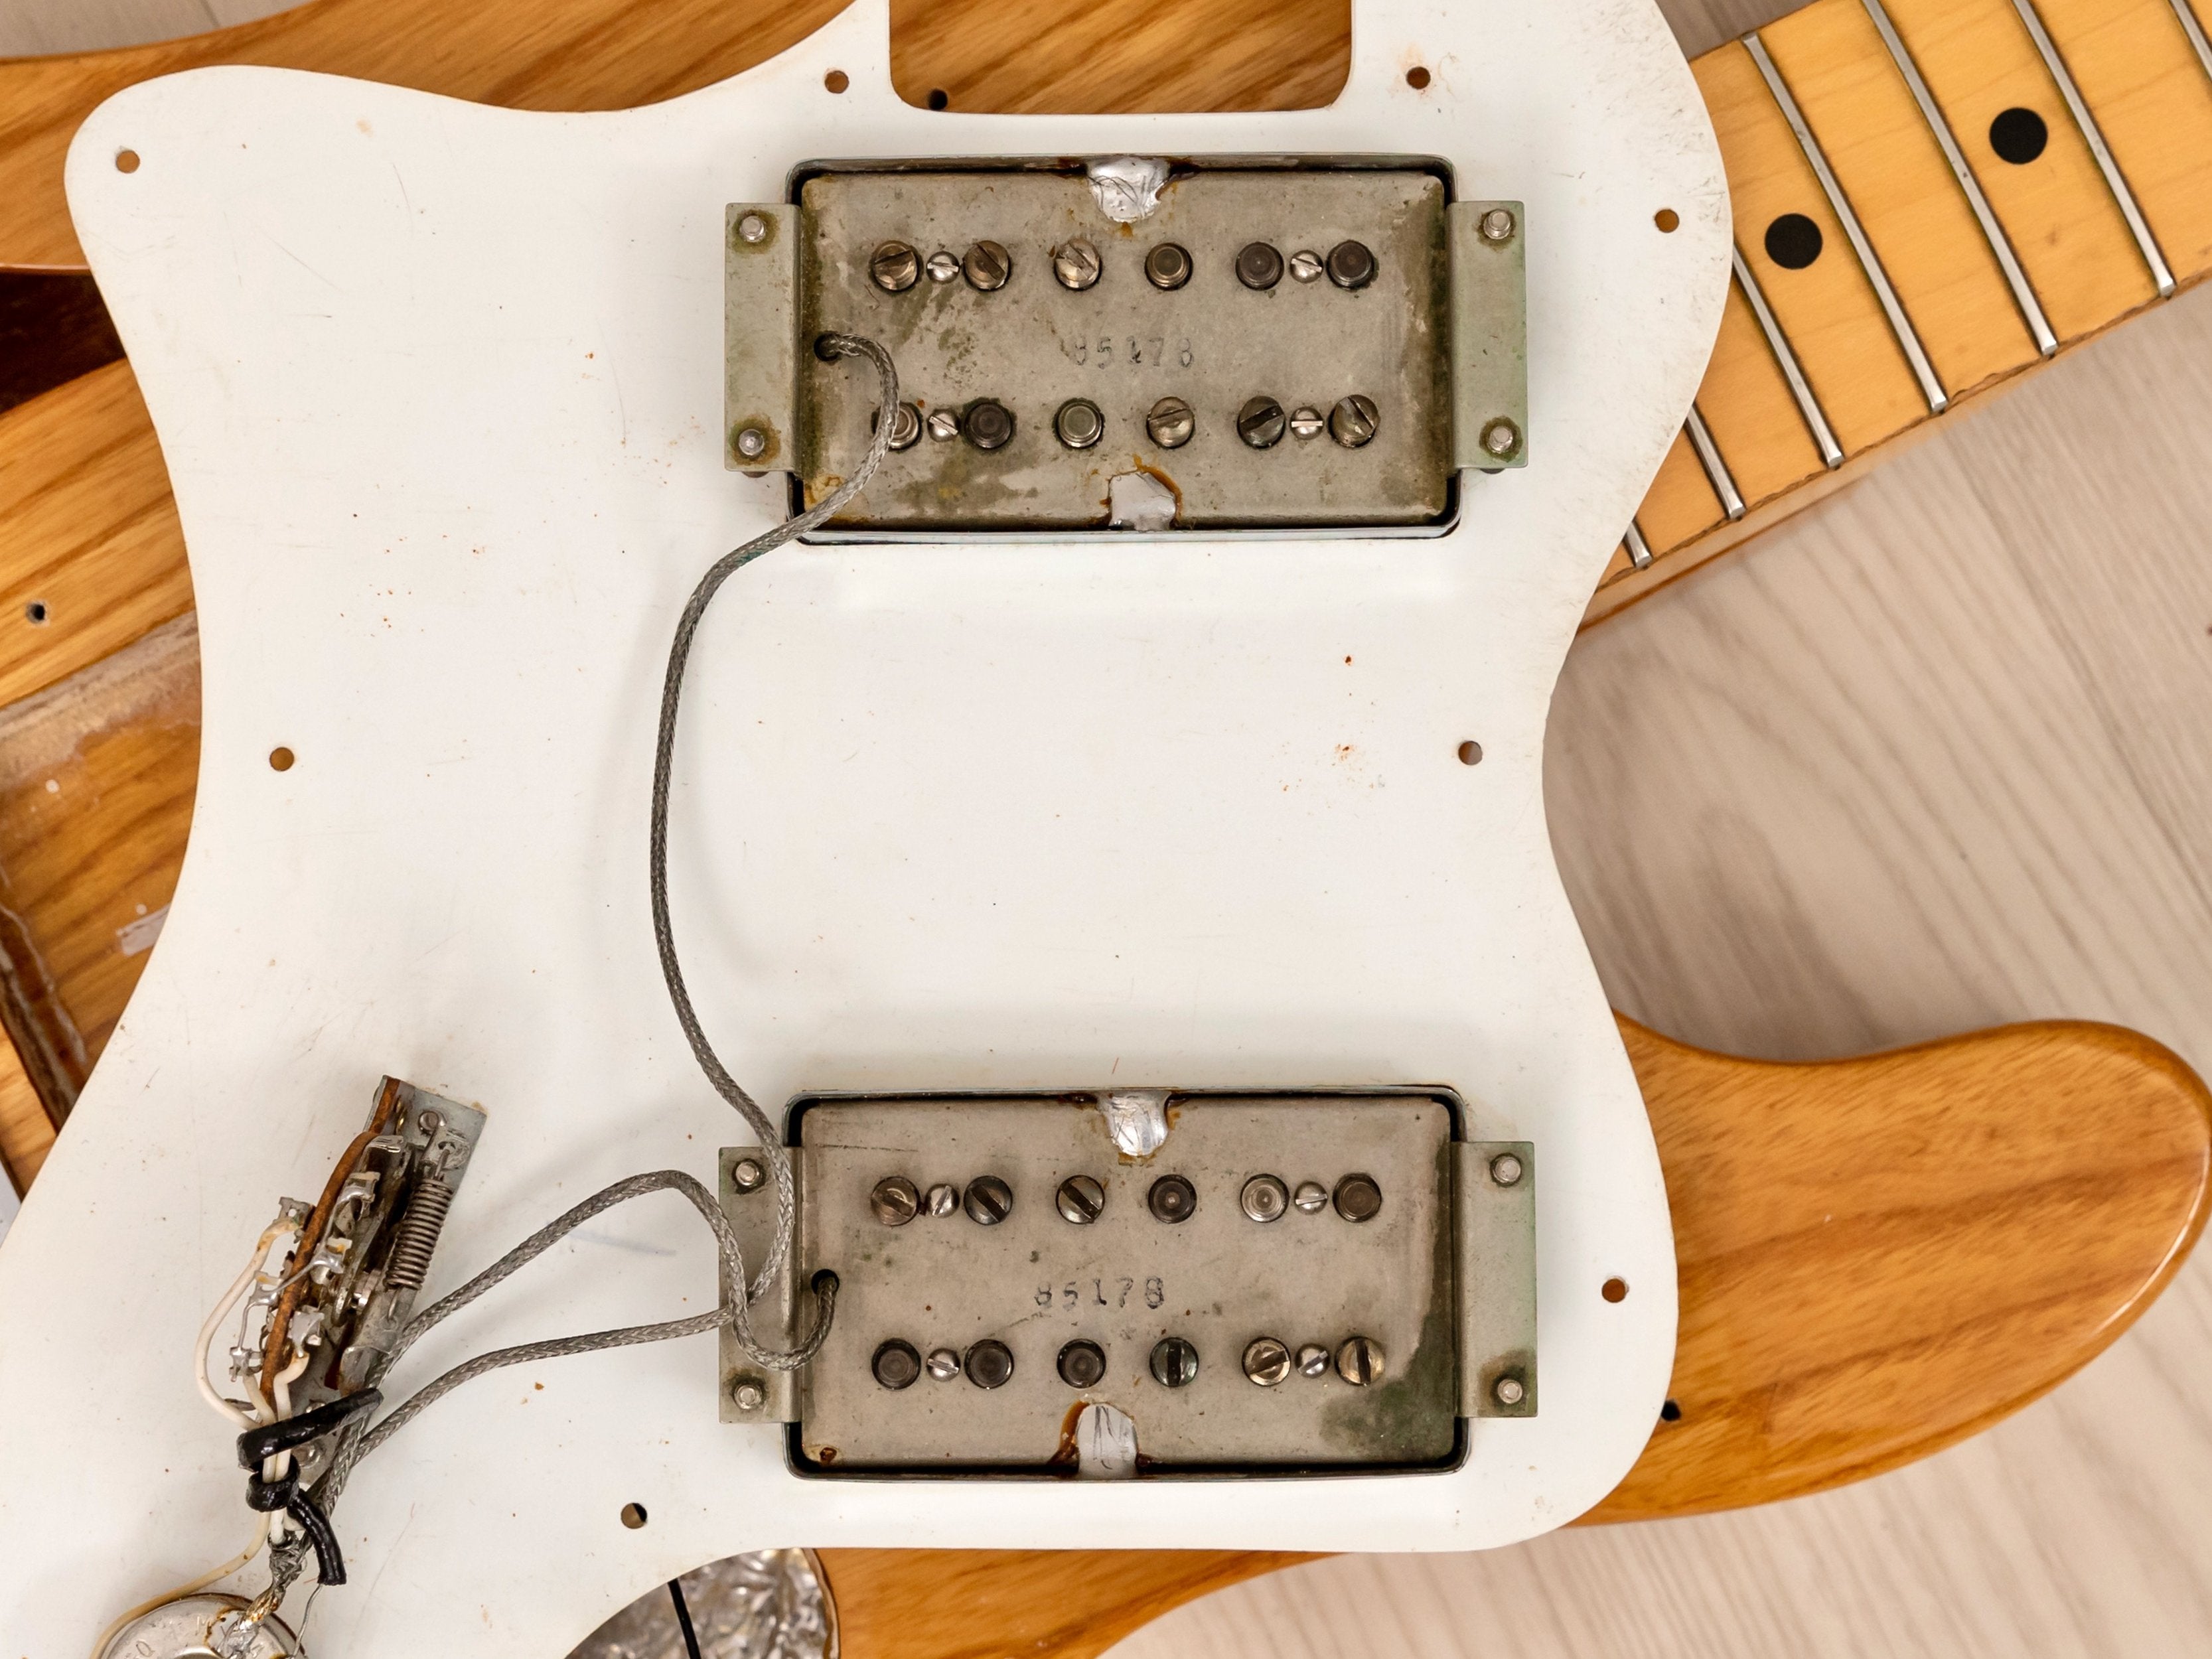 1979 Fender Telecaster Thinline Vintage Electric Guitar Natural, 100% Original w/ Wide Range, Case